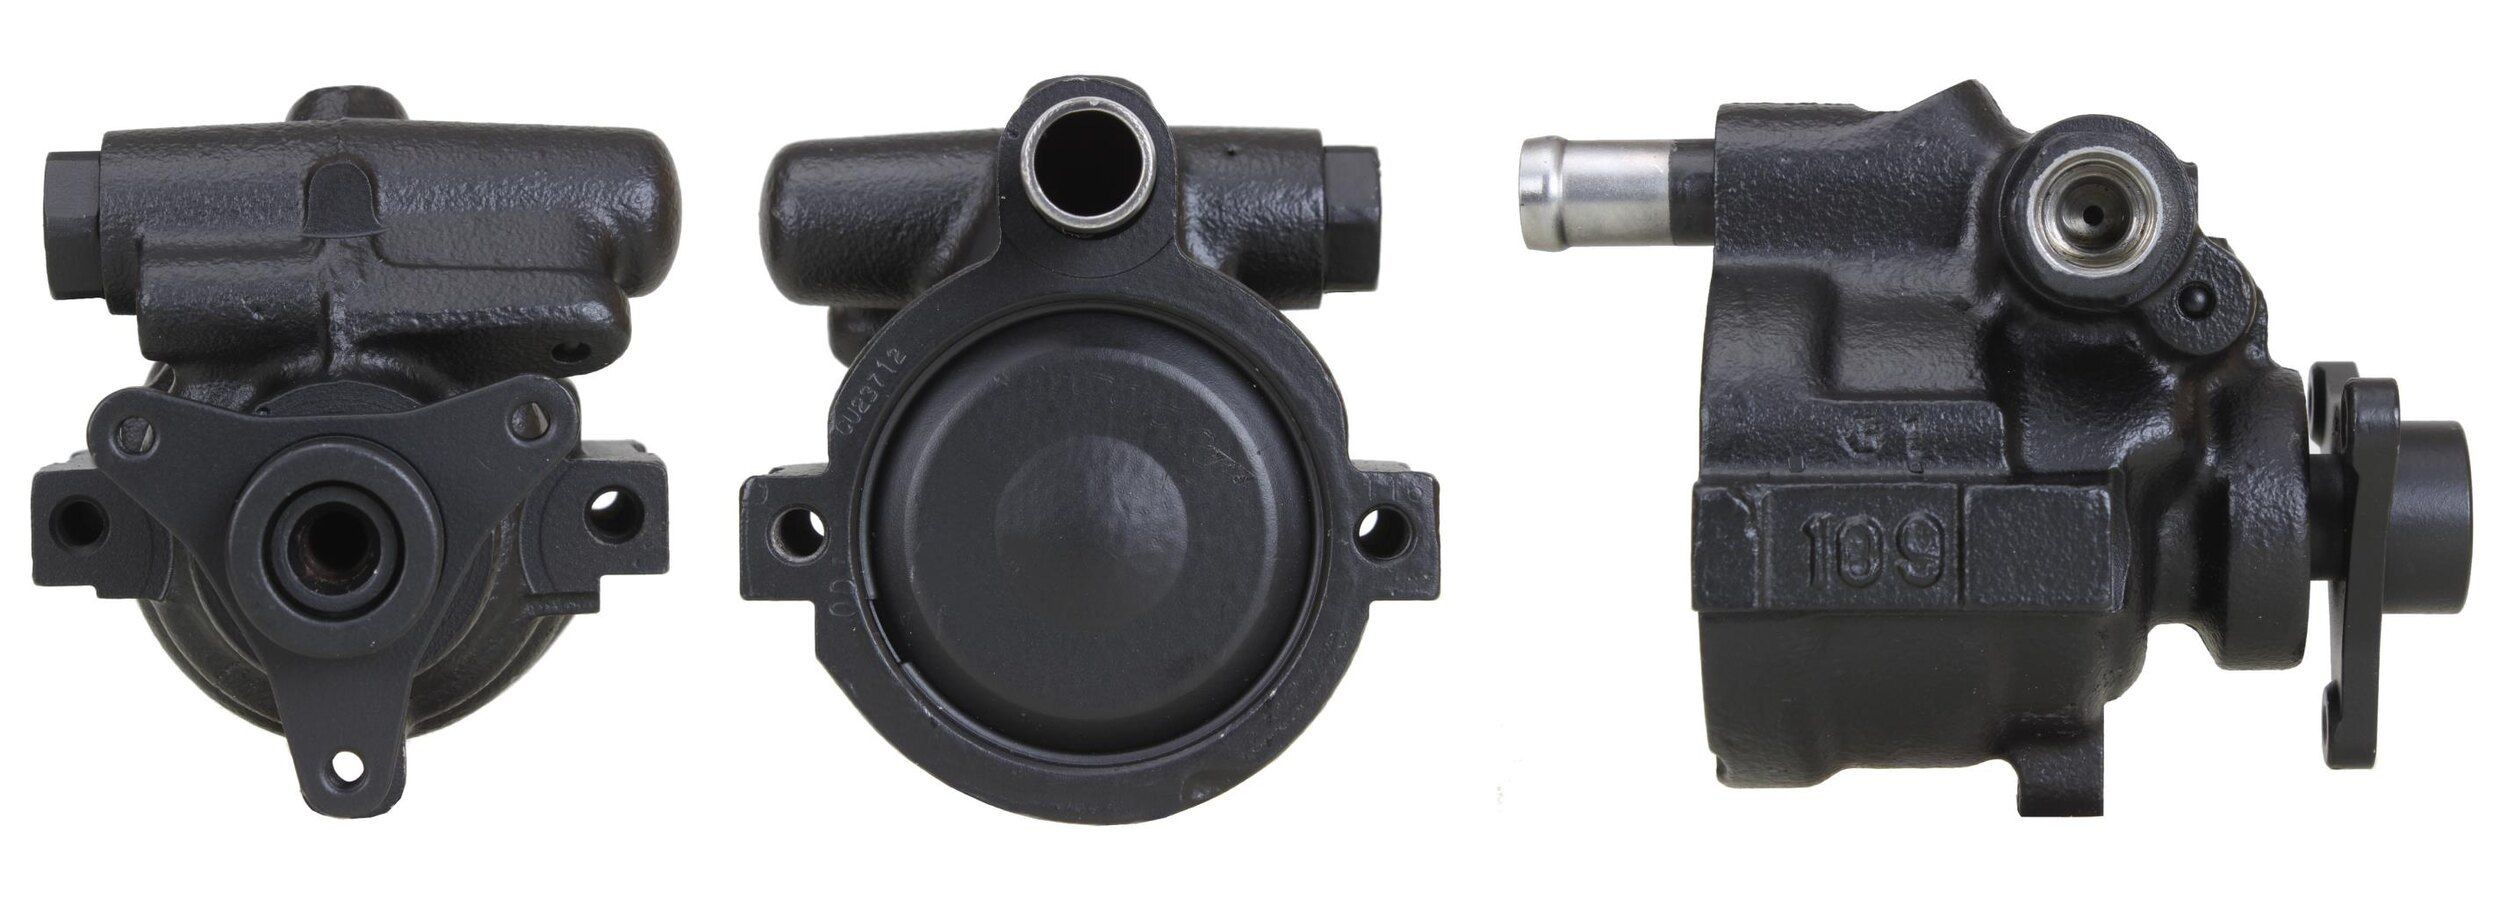 DRI Hydraulic, 85 bar Pressure [bar]: 85bar Steering Pump 715520251 buy